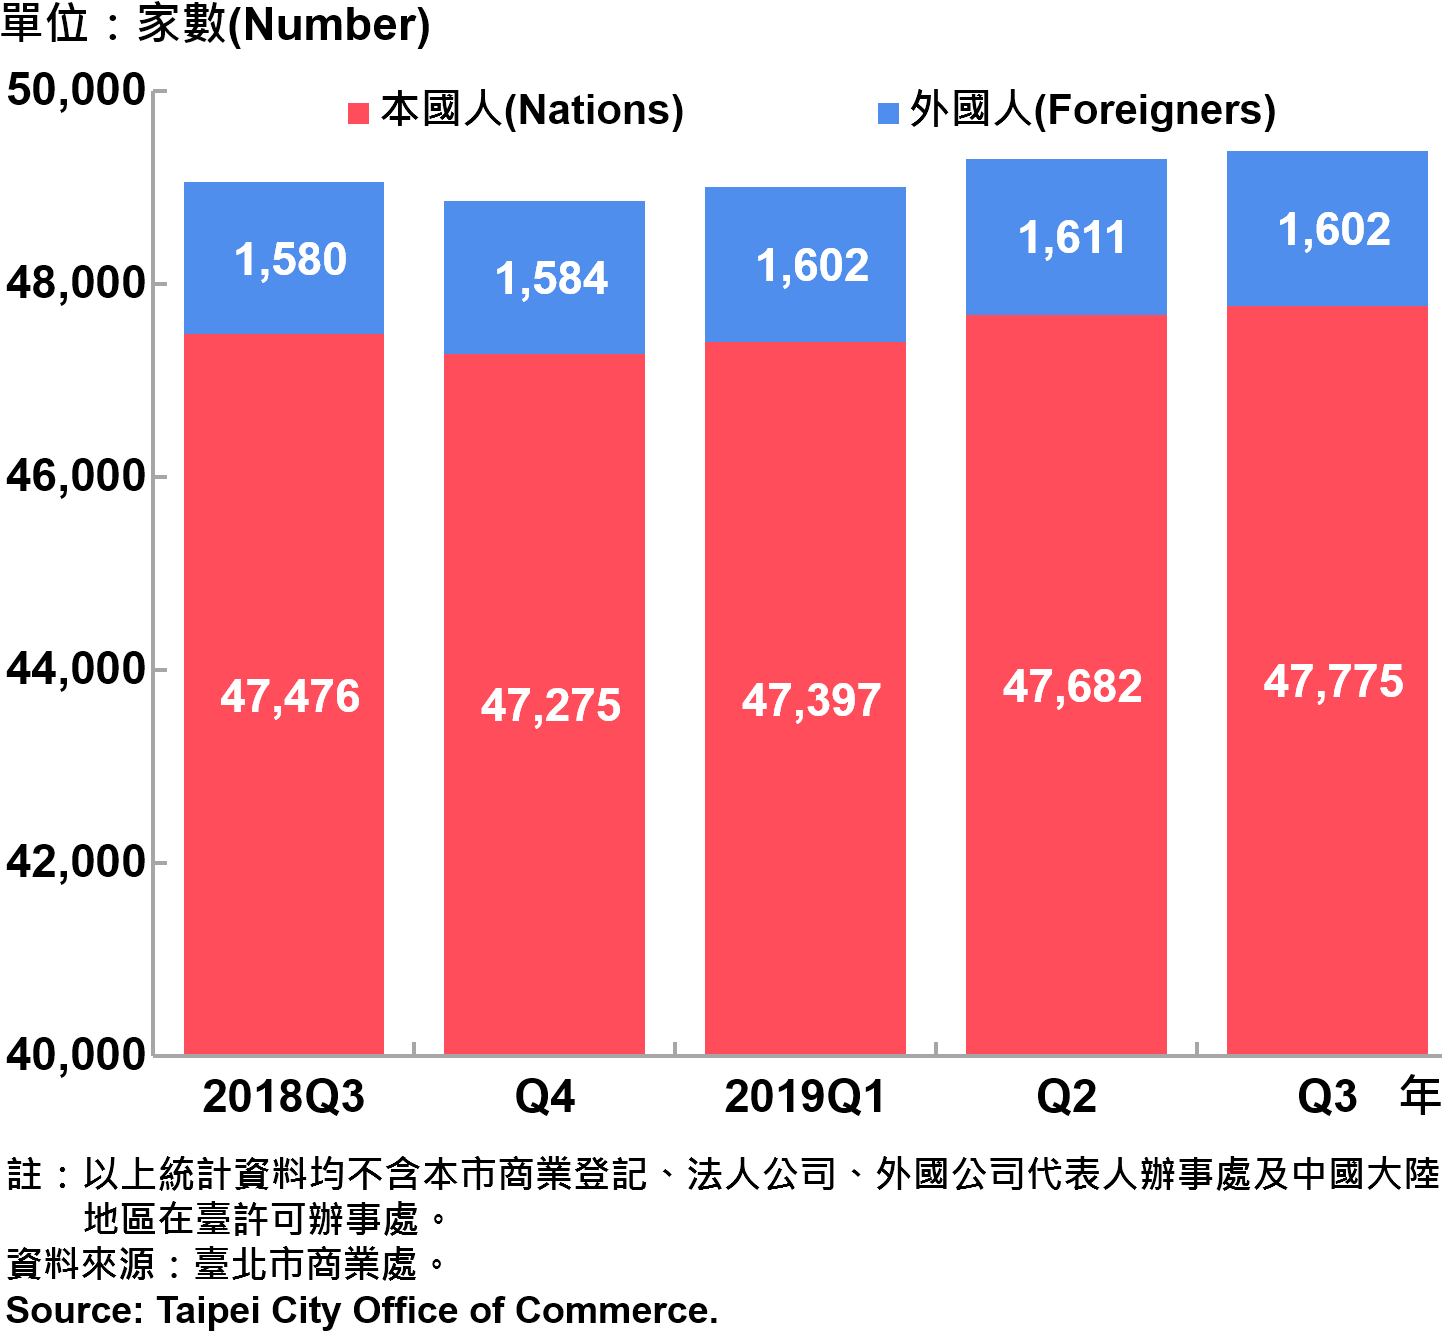 臺北市新創公司青創負責人為本國人與外國人分布情形—依現存家數—2019Q3 Responsible Person of Newly Registered Companies In Taipei City by Nationality - Number of Current —2019Q3